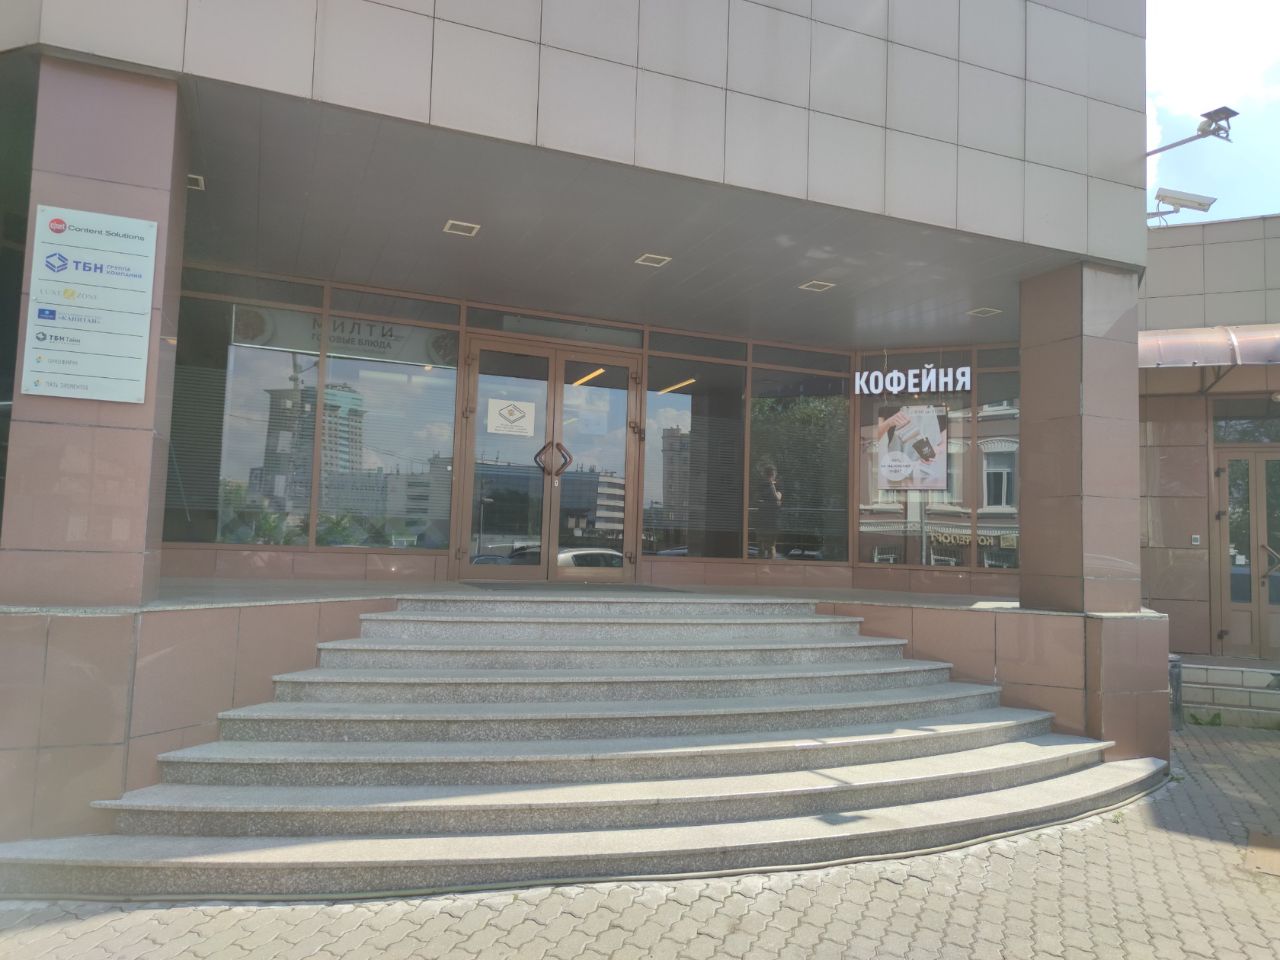 Бизнес Центр ТБН